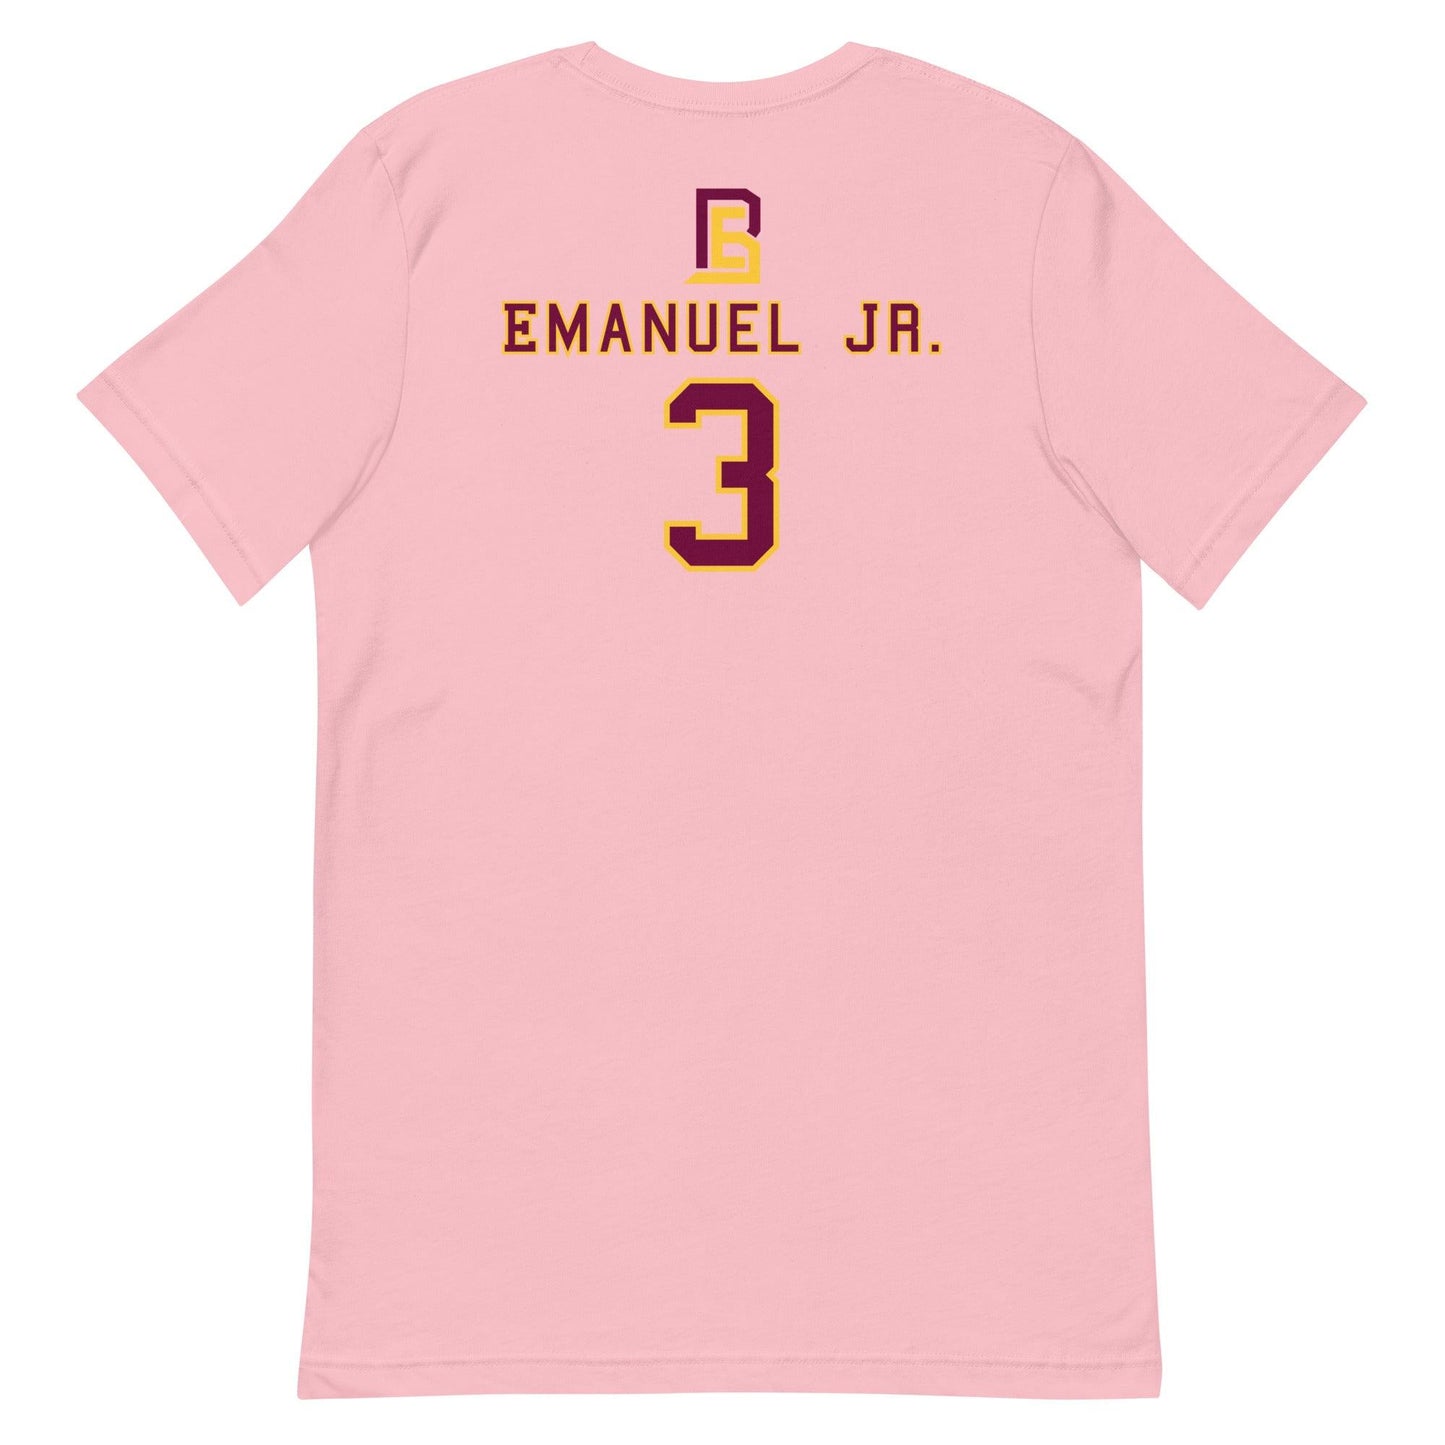 Bert Emanuel Jr. "Jersey" t-shirt - Fan Arch